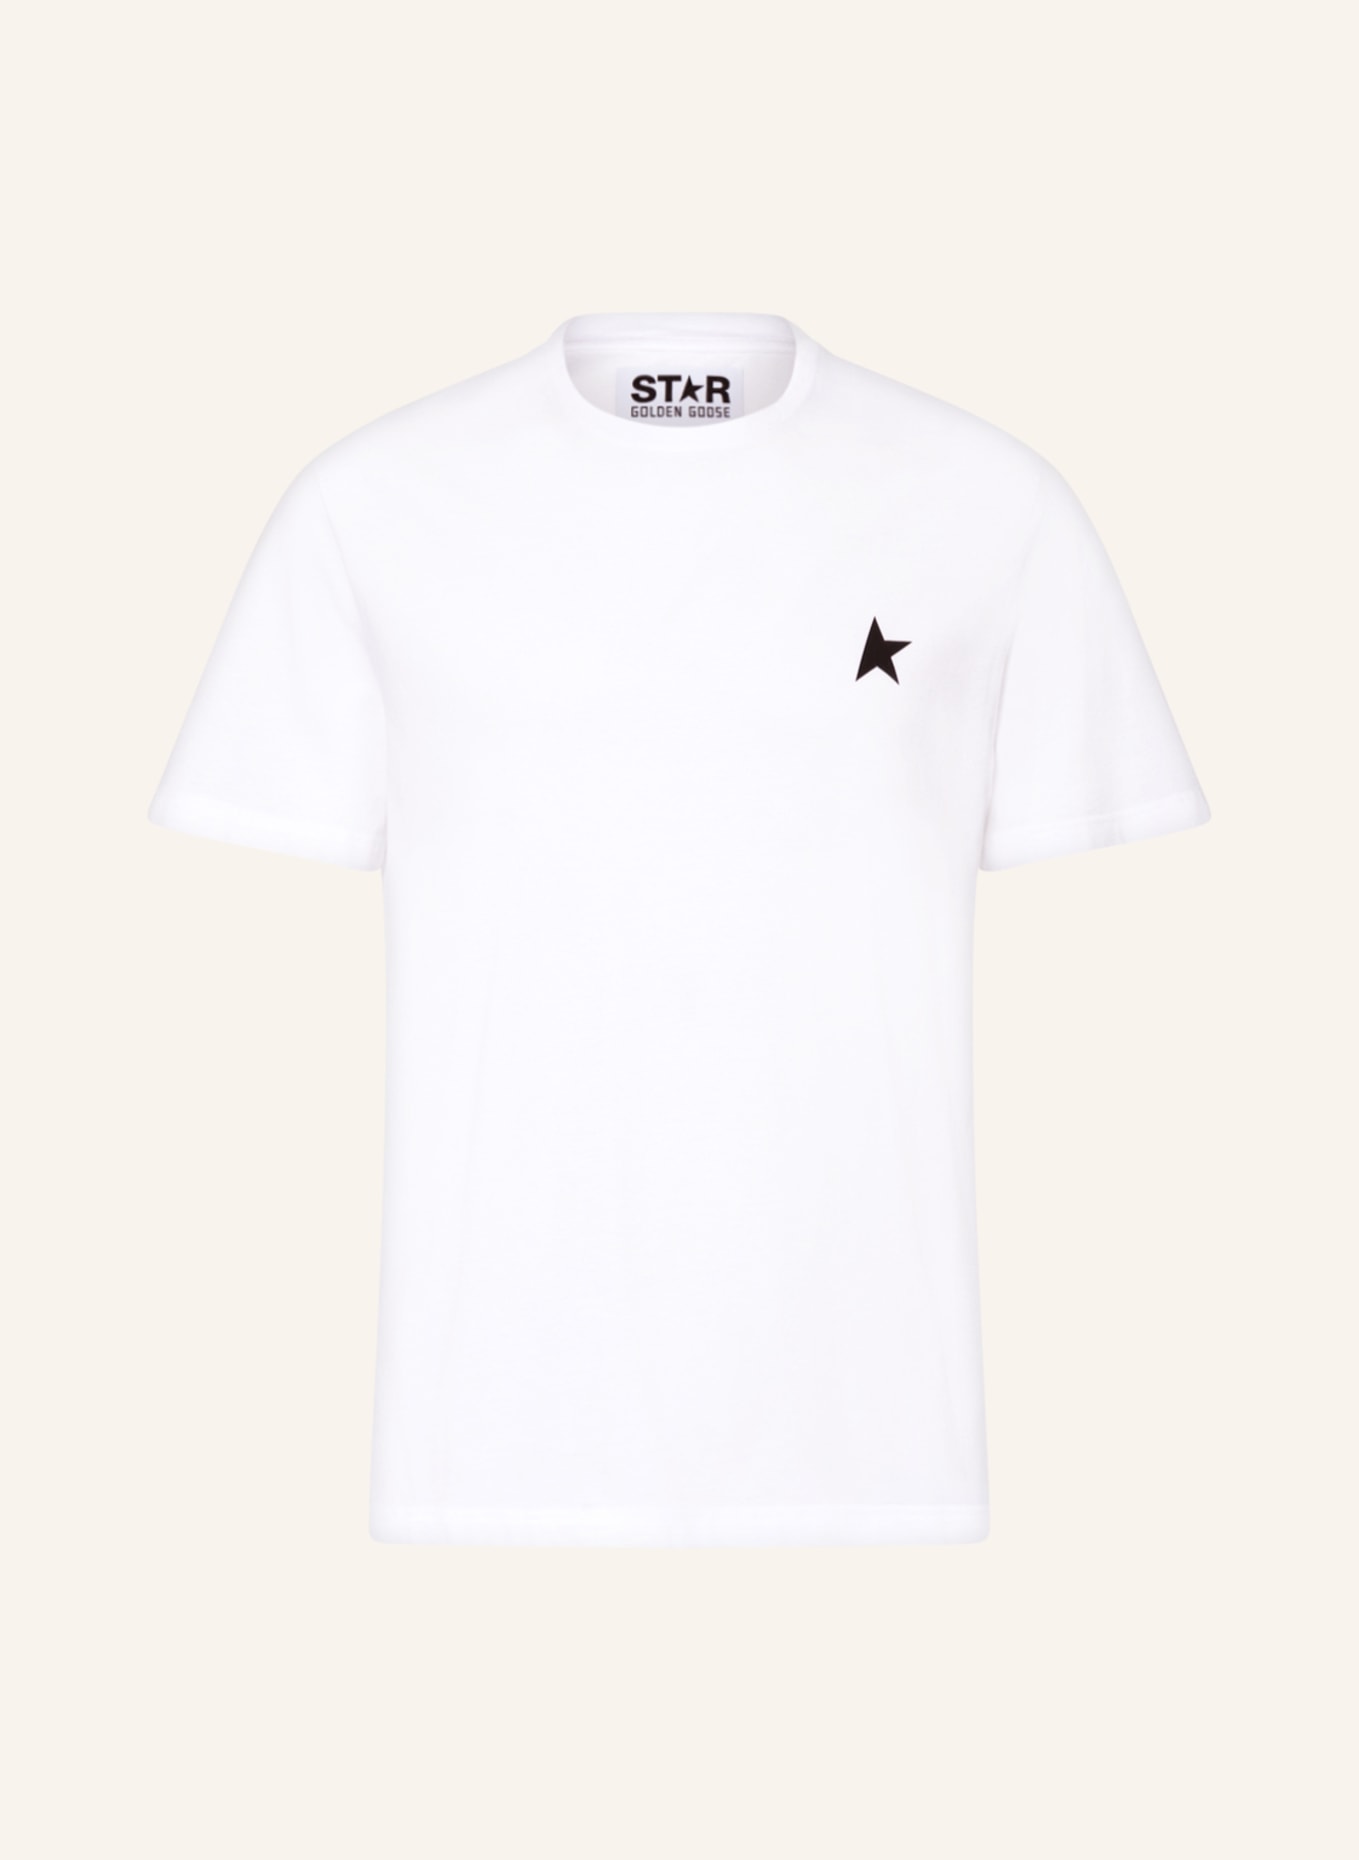 GOLDEN GOOSE T-Shirt STAR, Farbe: WEISS (Bild 1)